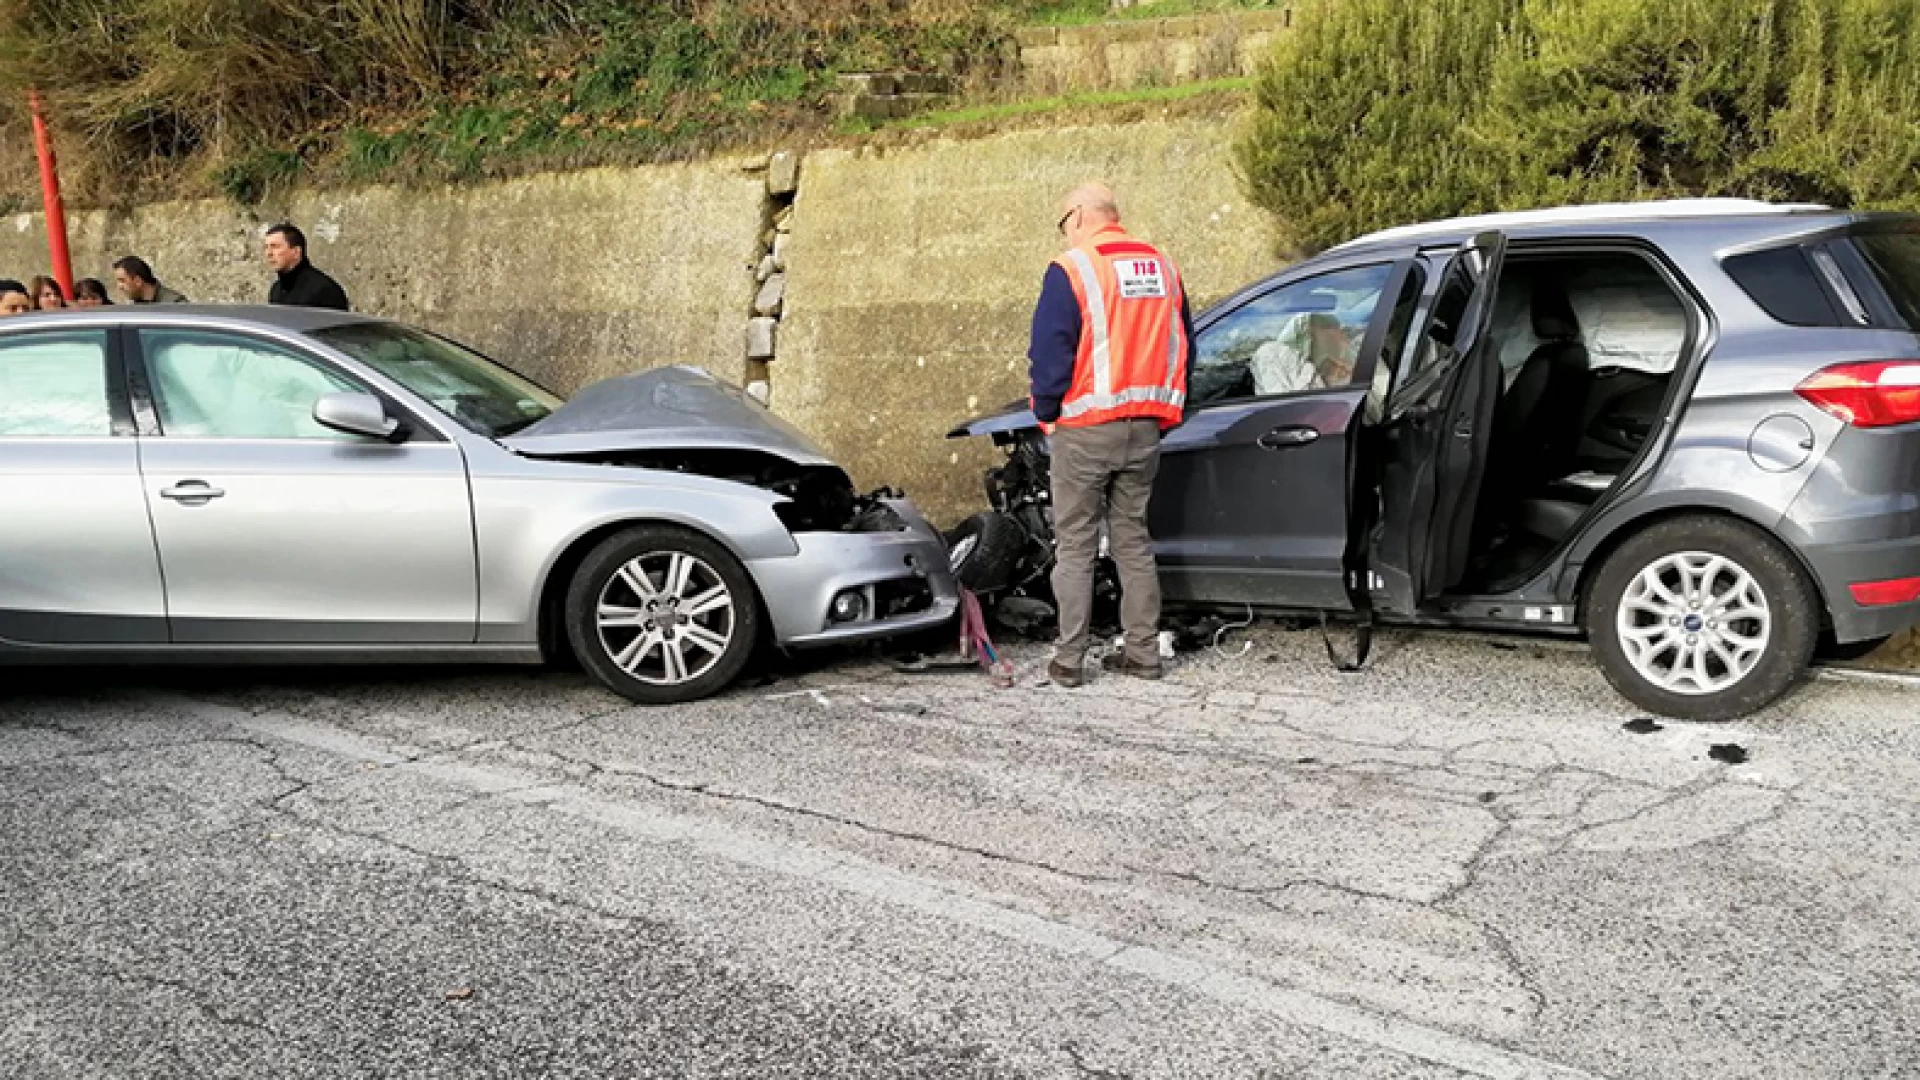 Colli a Volturno: violento impatto frontale tra due autovetture sulla provinciale Vandra. L’incidente nella prima mattinata.